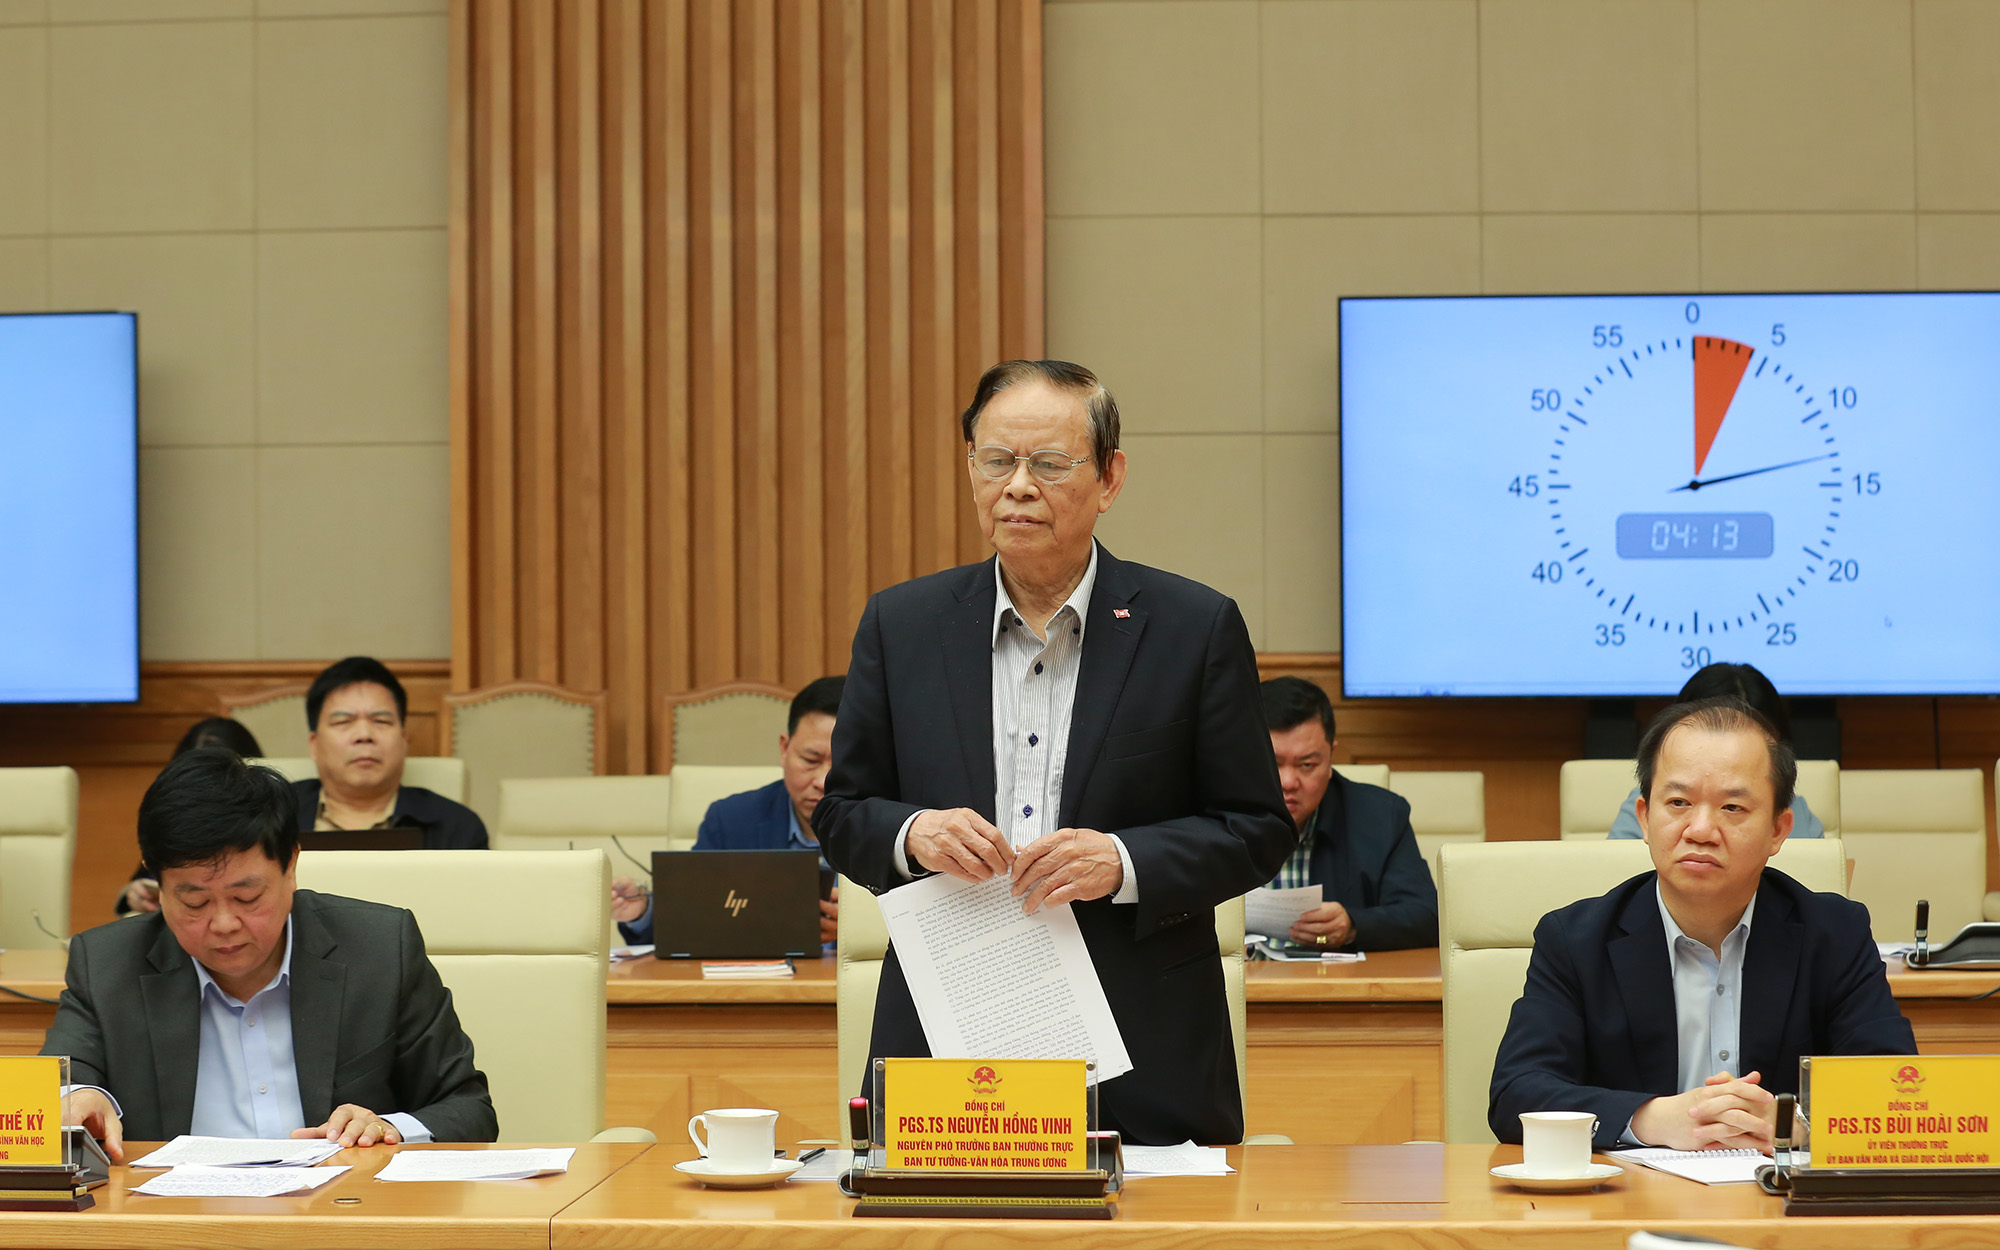 PGS.TS Hồng Vinh đề nghị cần tăng cường đầu tư ngân sách Nhà nước đáp ứng yêu cầu phát triển văn hóa trong từng giai đoạn cụ thể - Ảnh: VGP/Minh Khôi